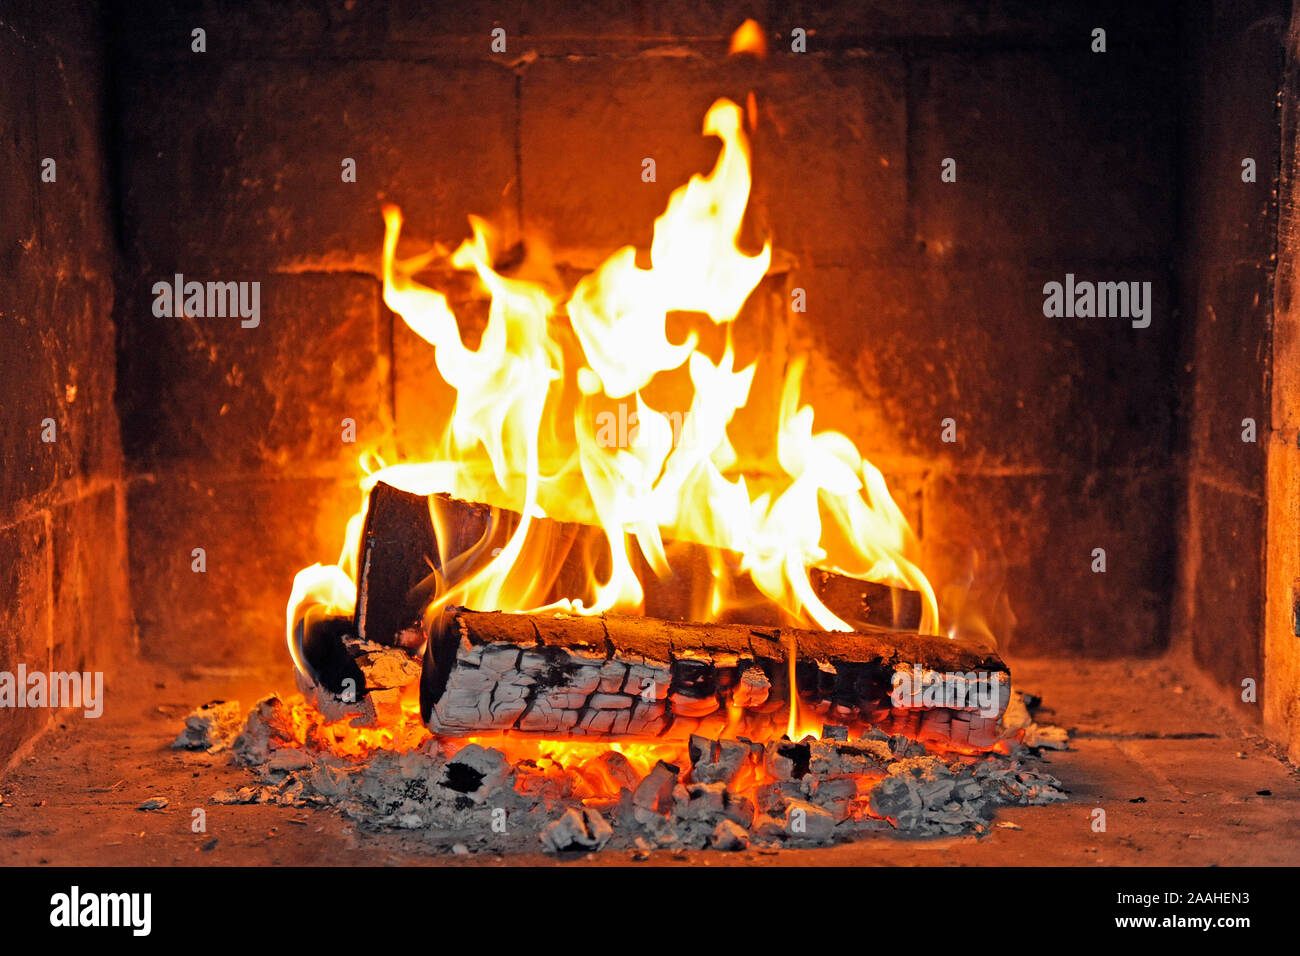 Holzfeuer in einem offenen Kamin Stock Photo